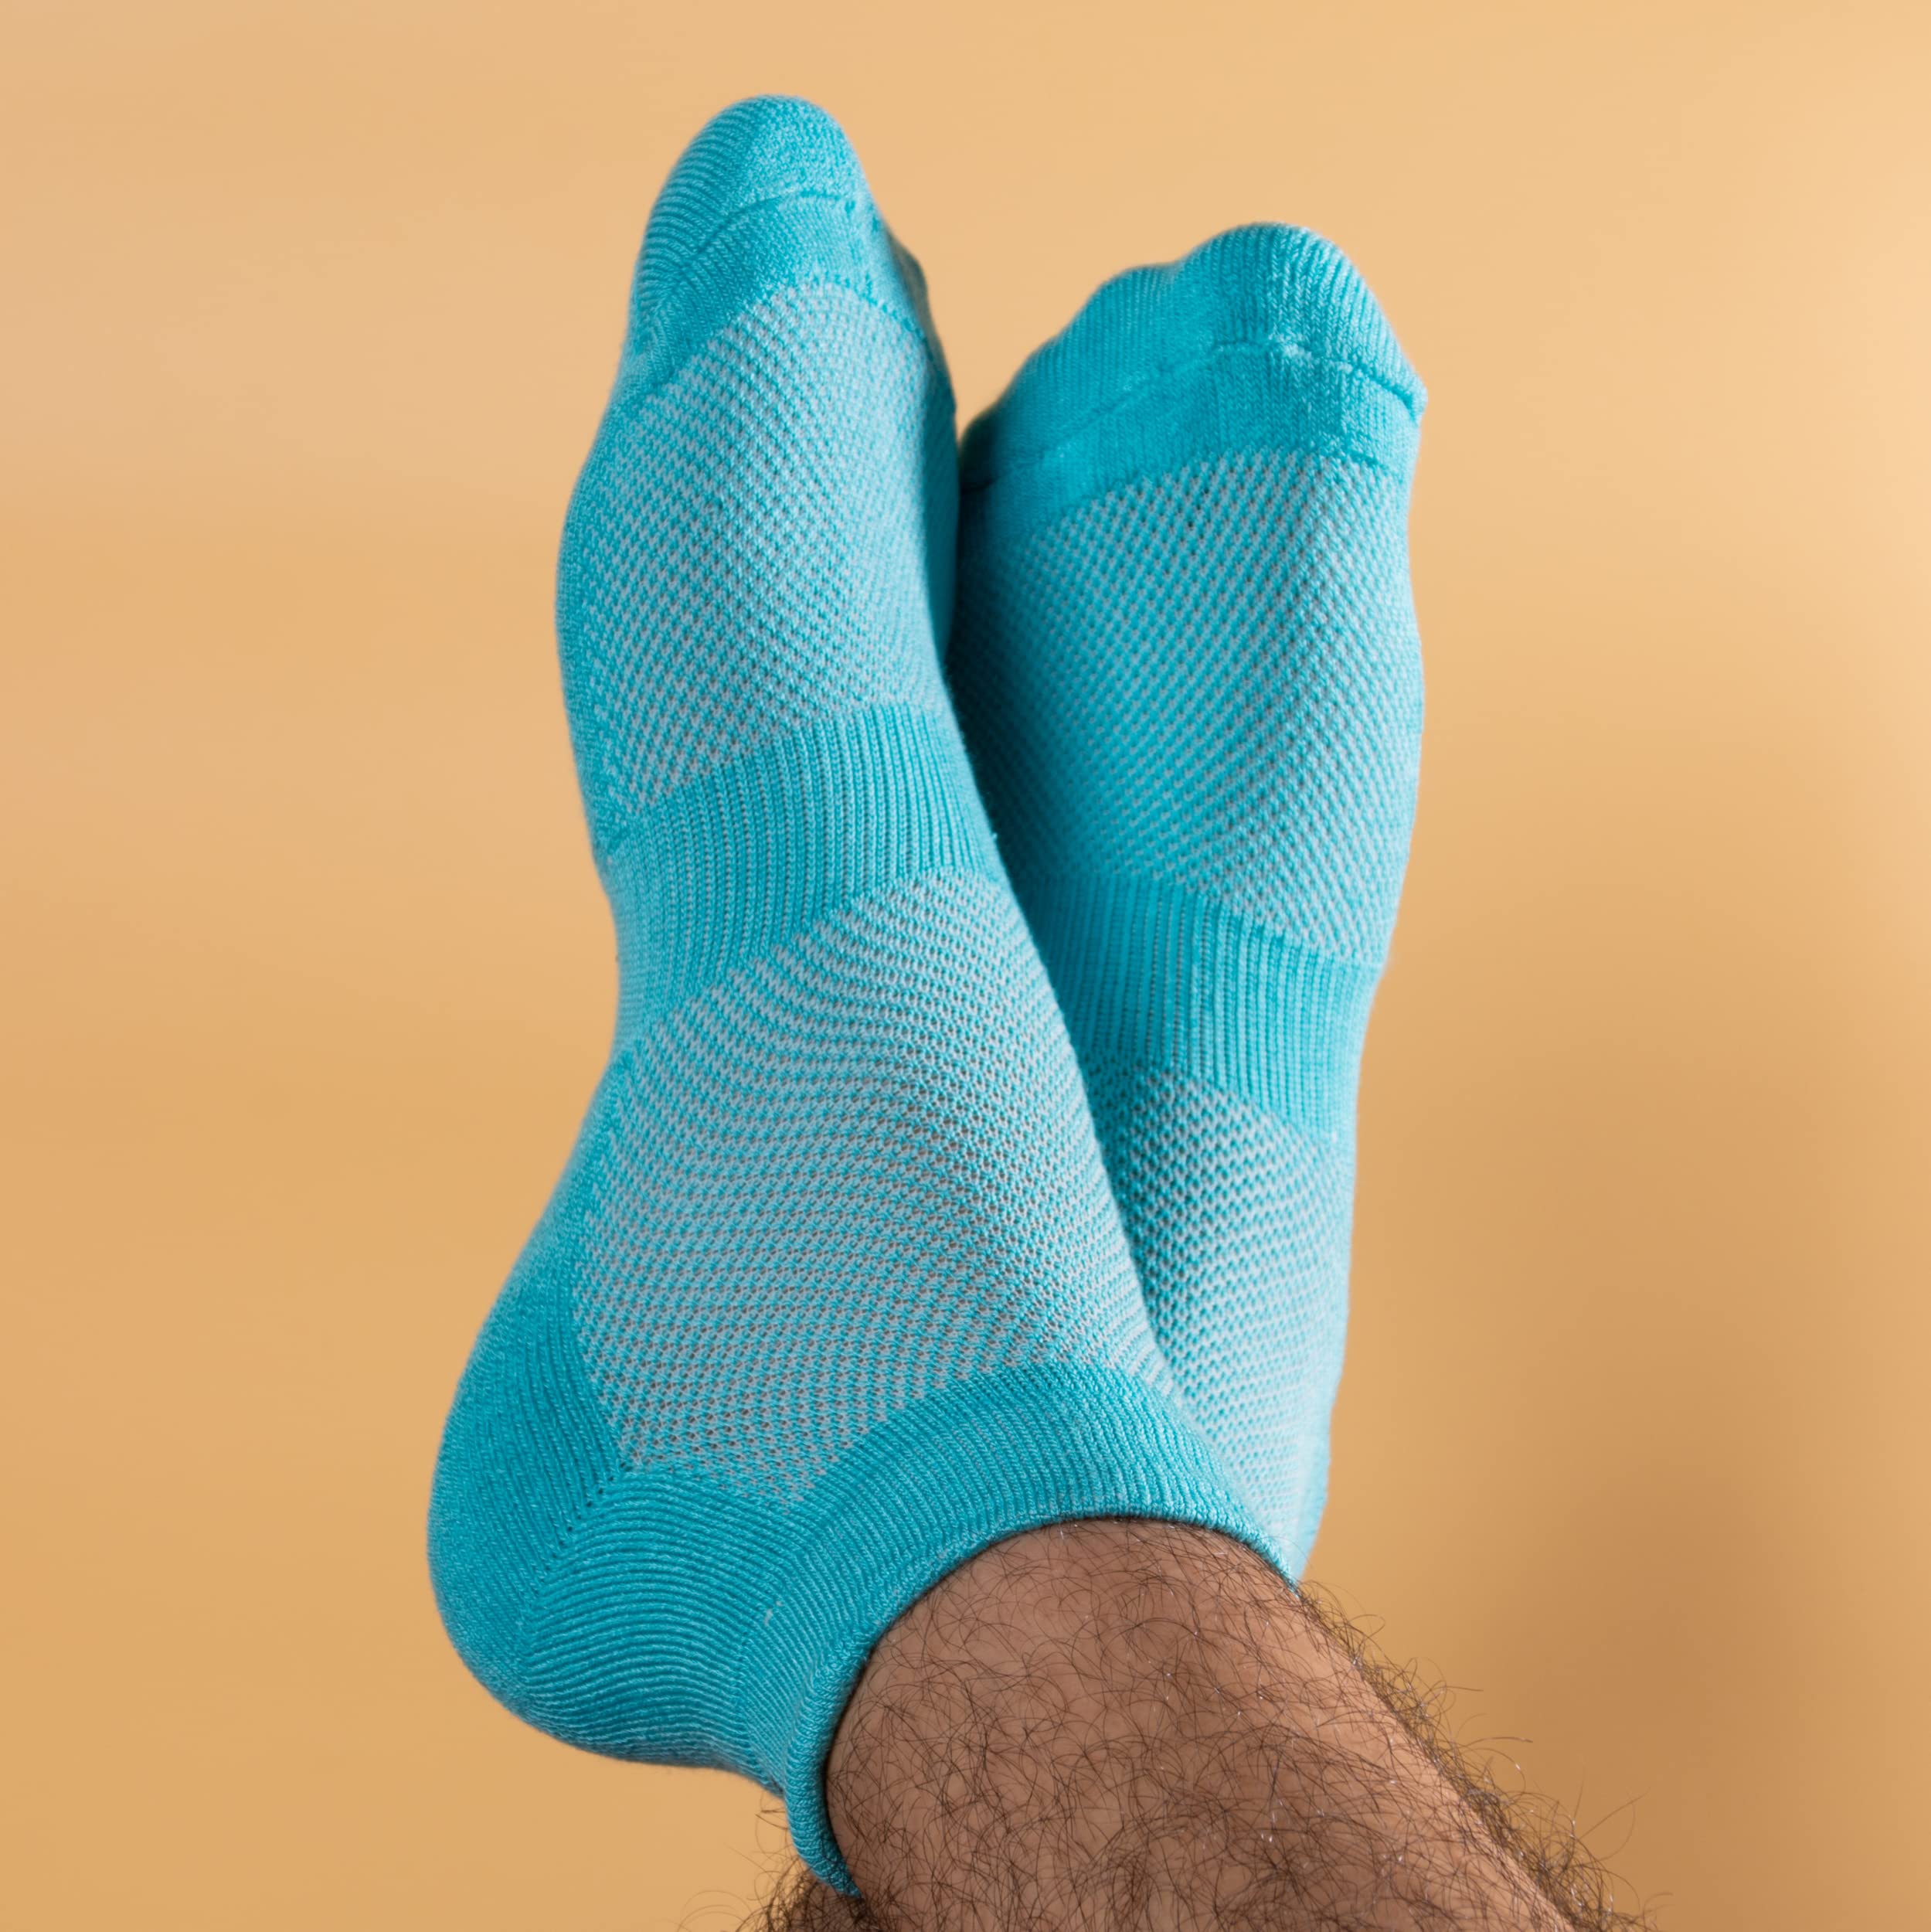 Mush Bamboo Fibre Ultra Soft, Anti Odor, Breathable, Anti Blister Ankle Length Socks for Men & Women for Running, Sports & Gym (Pack of 3)